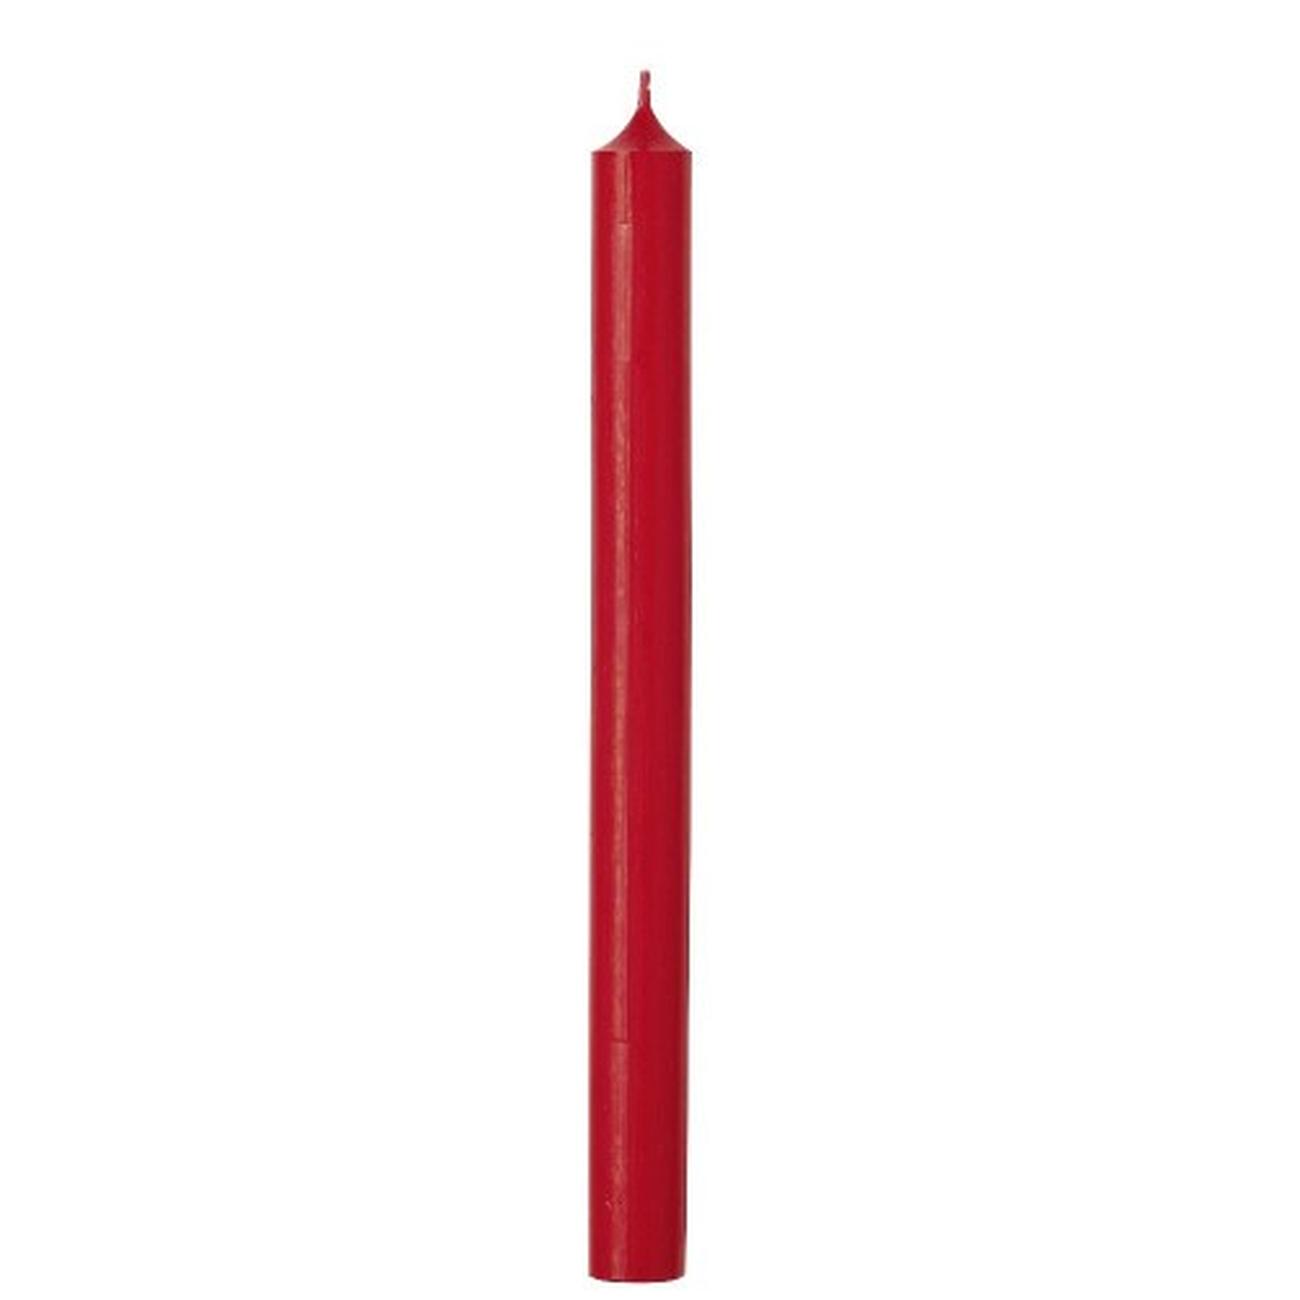 ihr-cylinder-candle-red - IHR Cylinder Candle Red